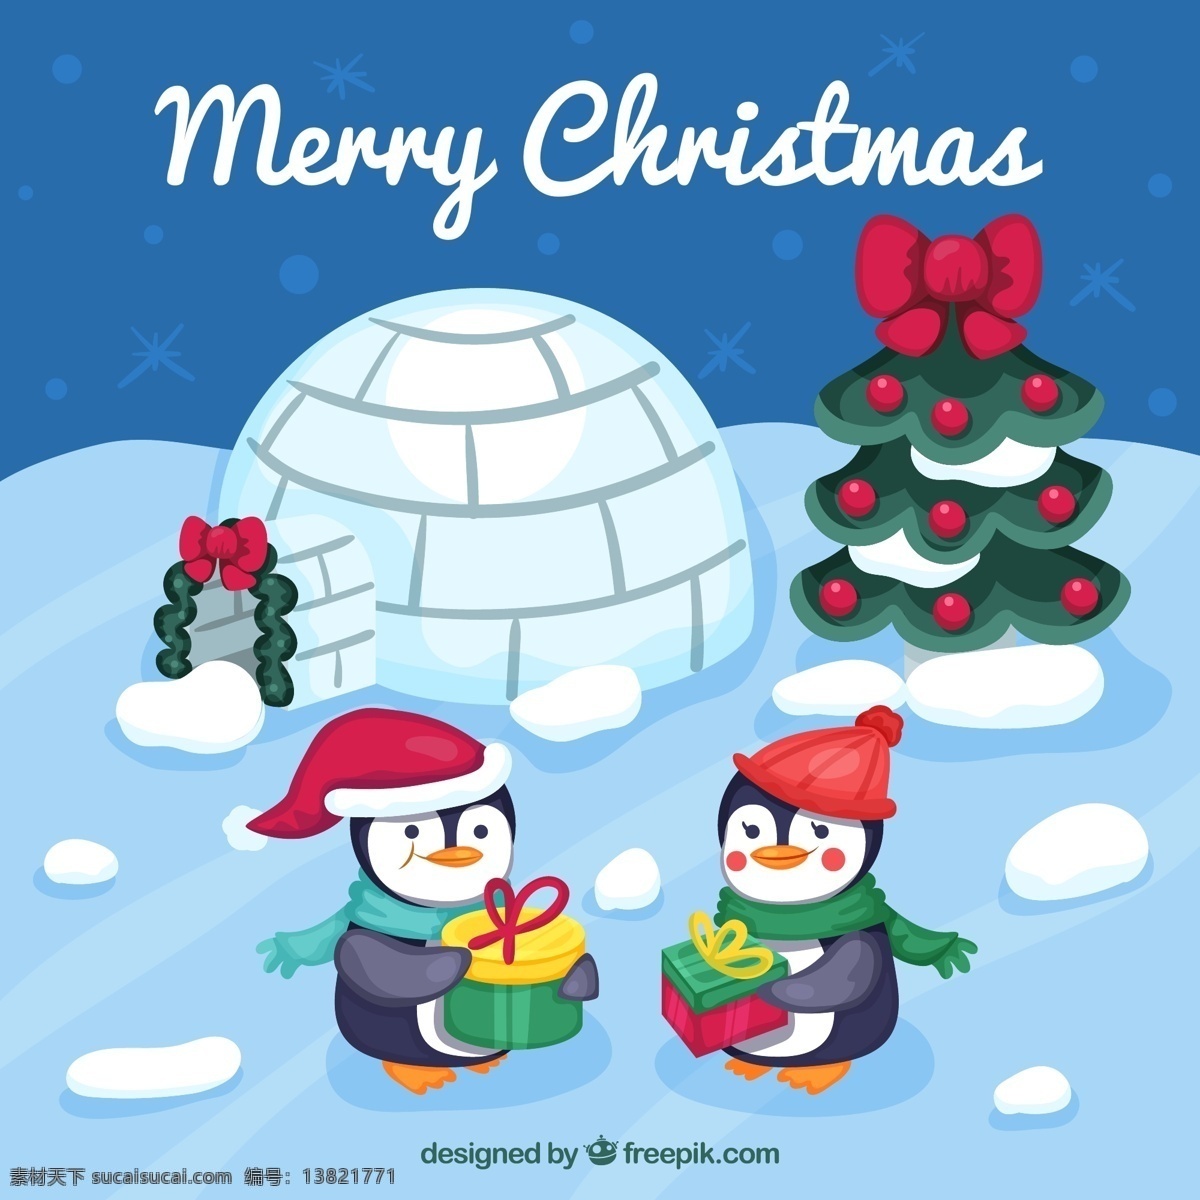 卡 通过 圣诞节 企鹅 圣诞树 礼物 礼盒 雪花 merry christmas 卡通 冰屋 文化艺术 节日庆祝